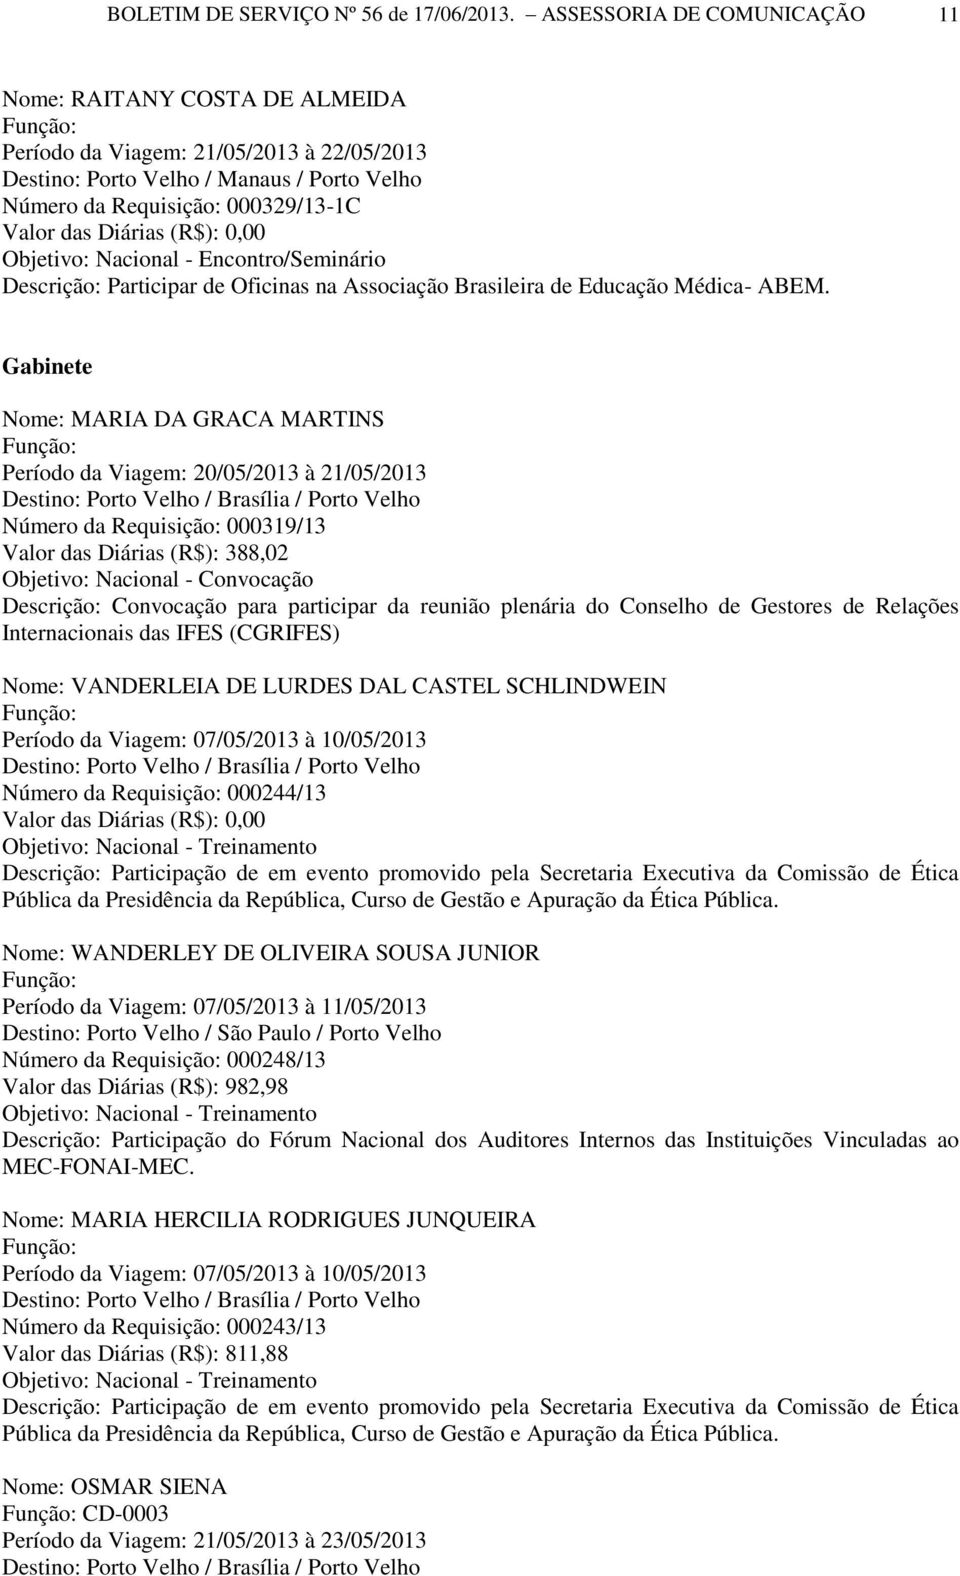 (R$): 0,00 Descrição: Participar de Oficinas na Associação Brasileira de Educação Médica- ABEM.